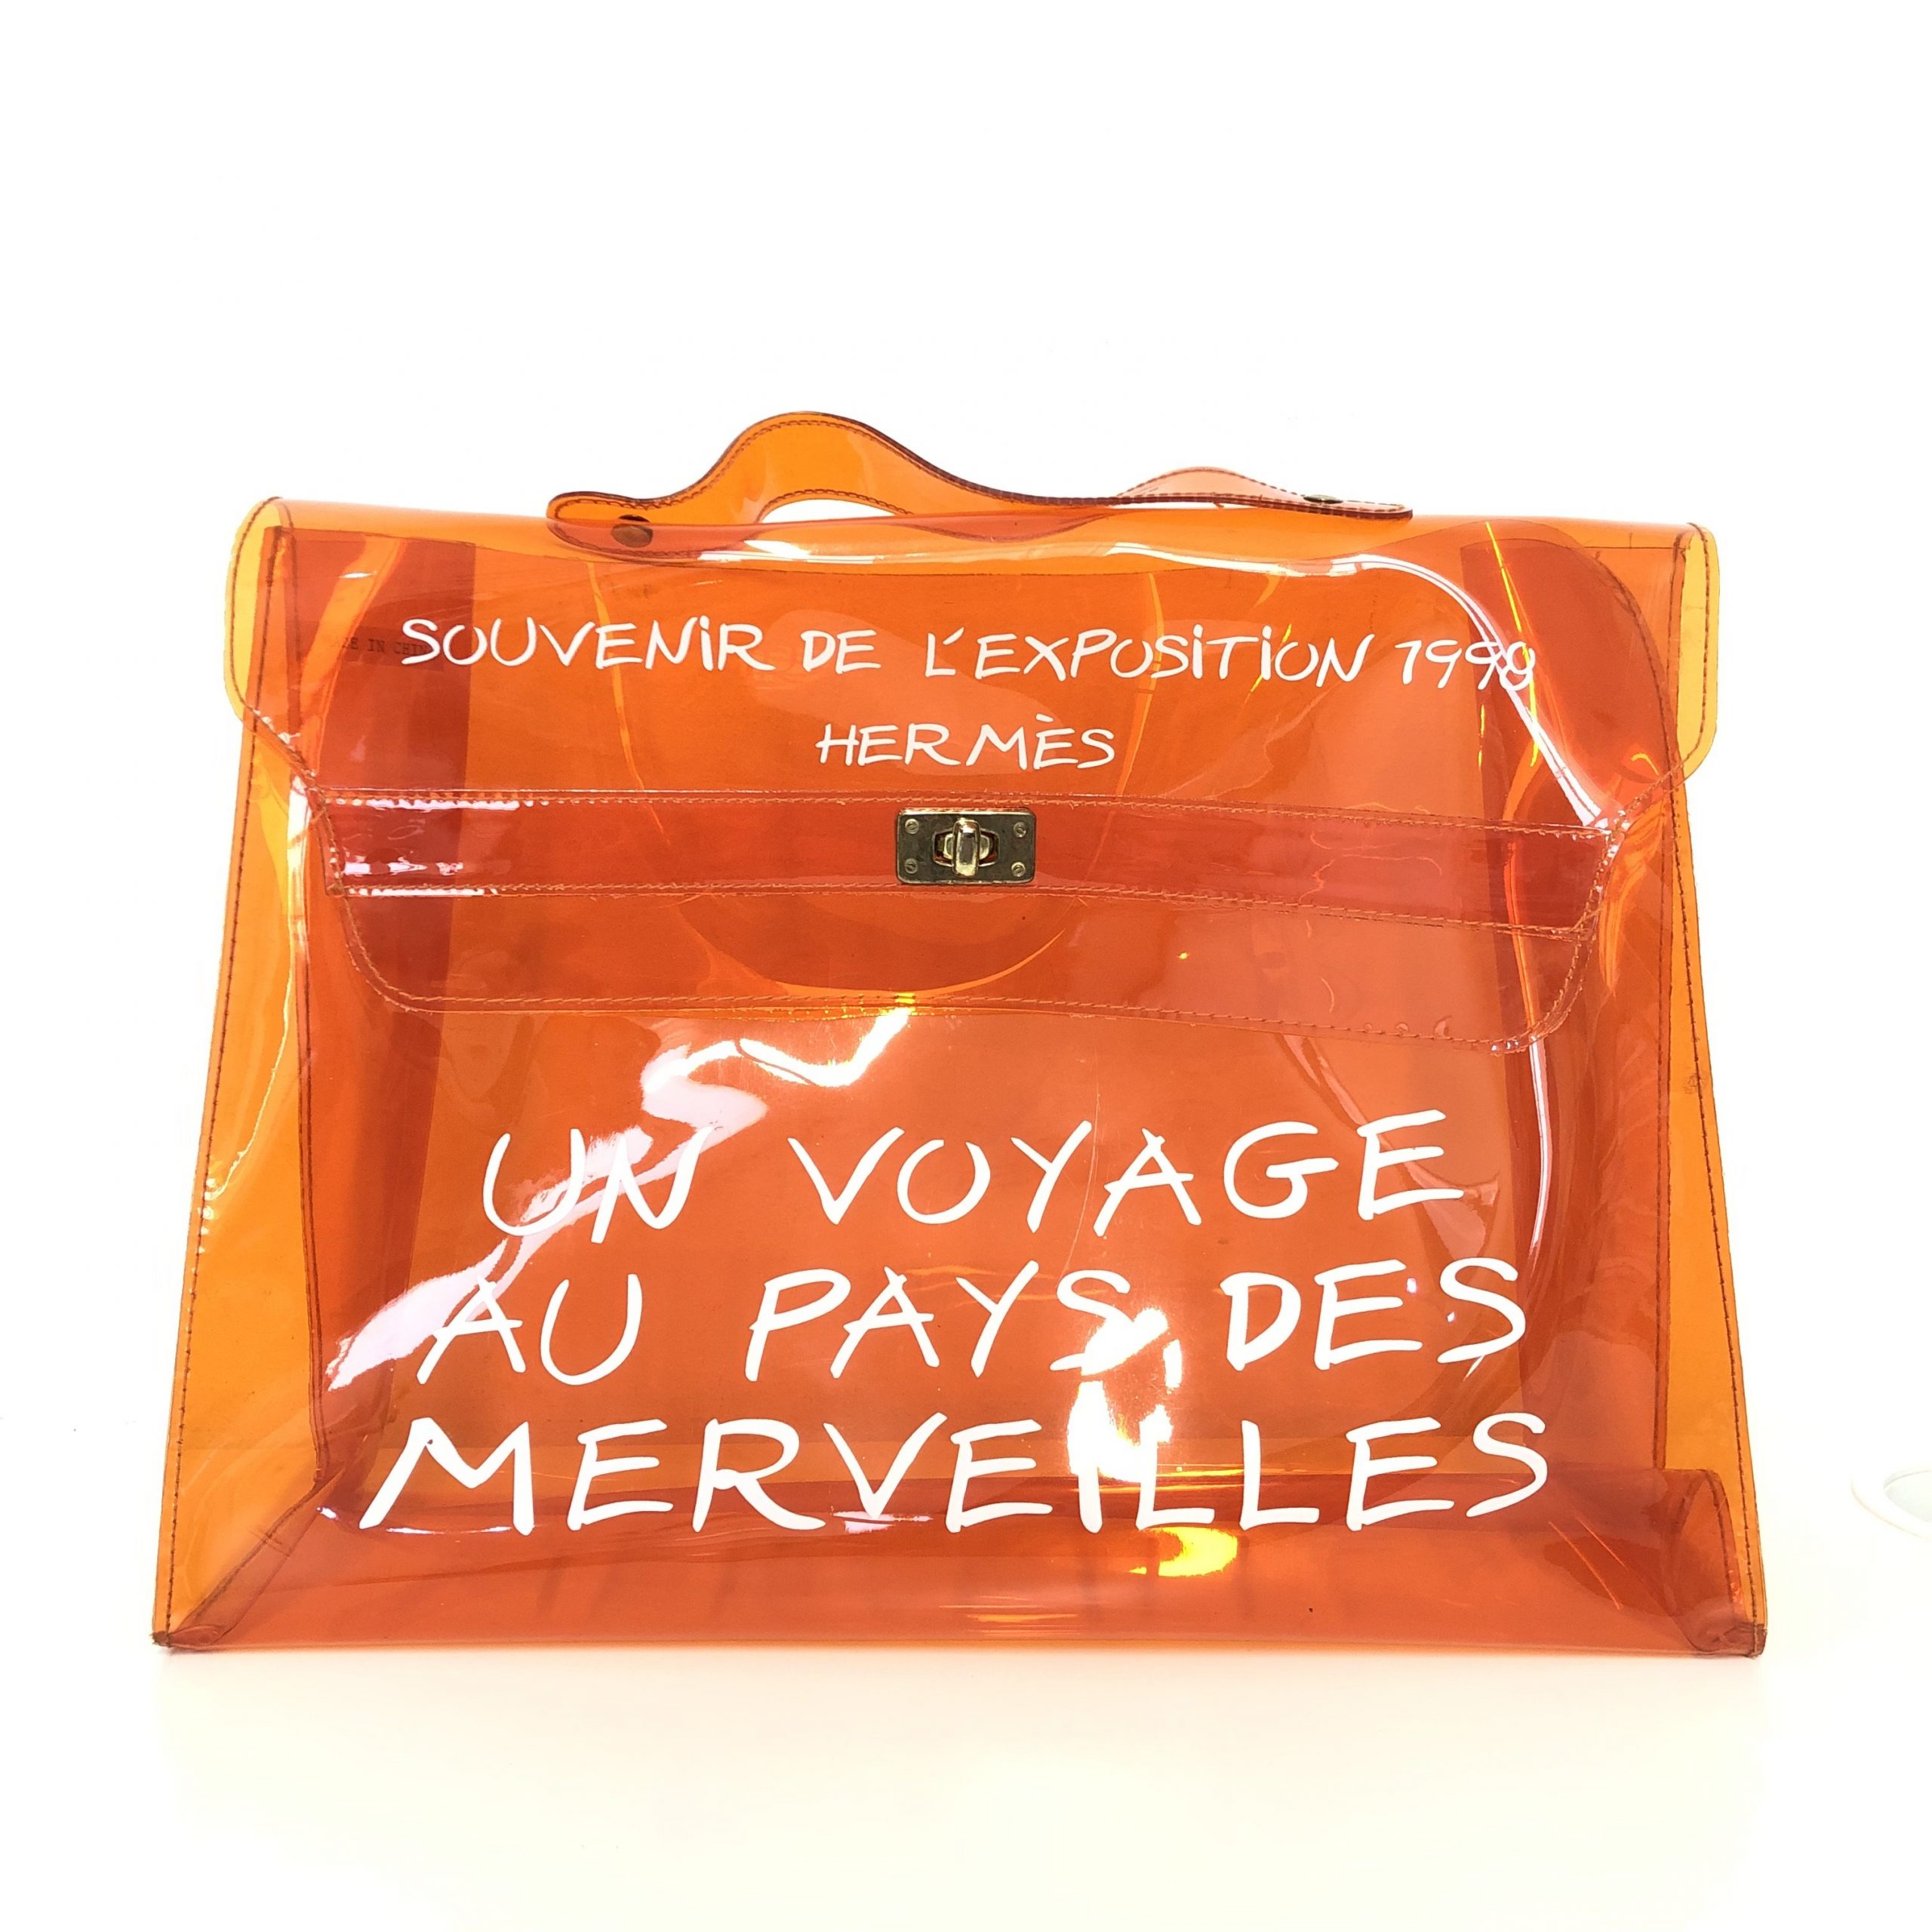 Hermes Clear Vinyl Vintage Kelly Bag Hermes